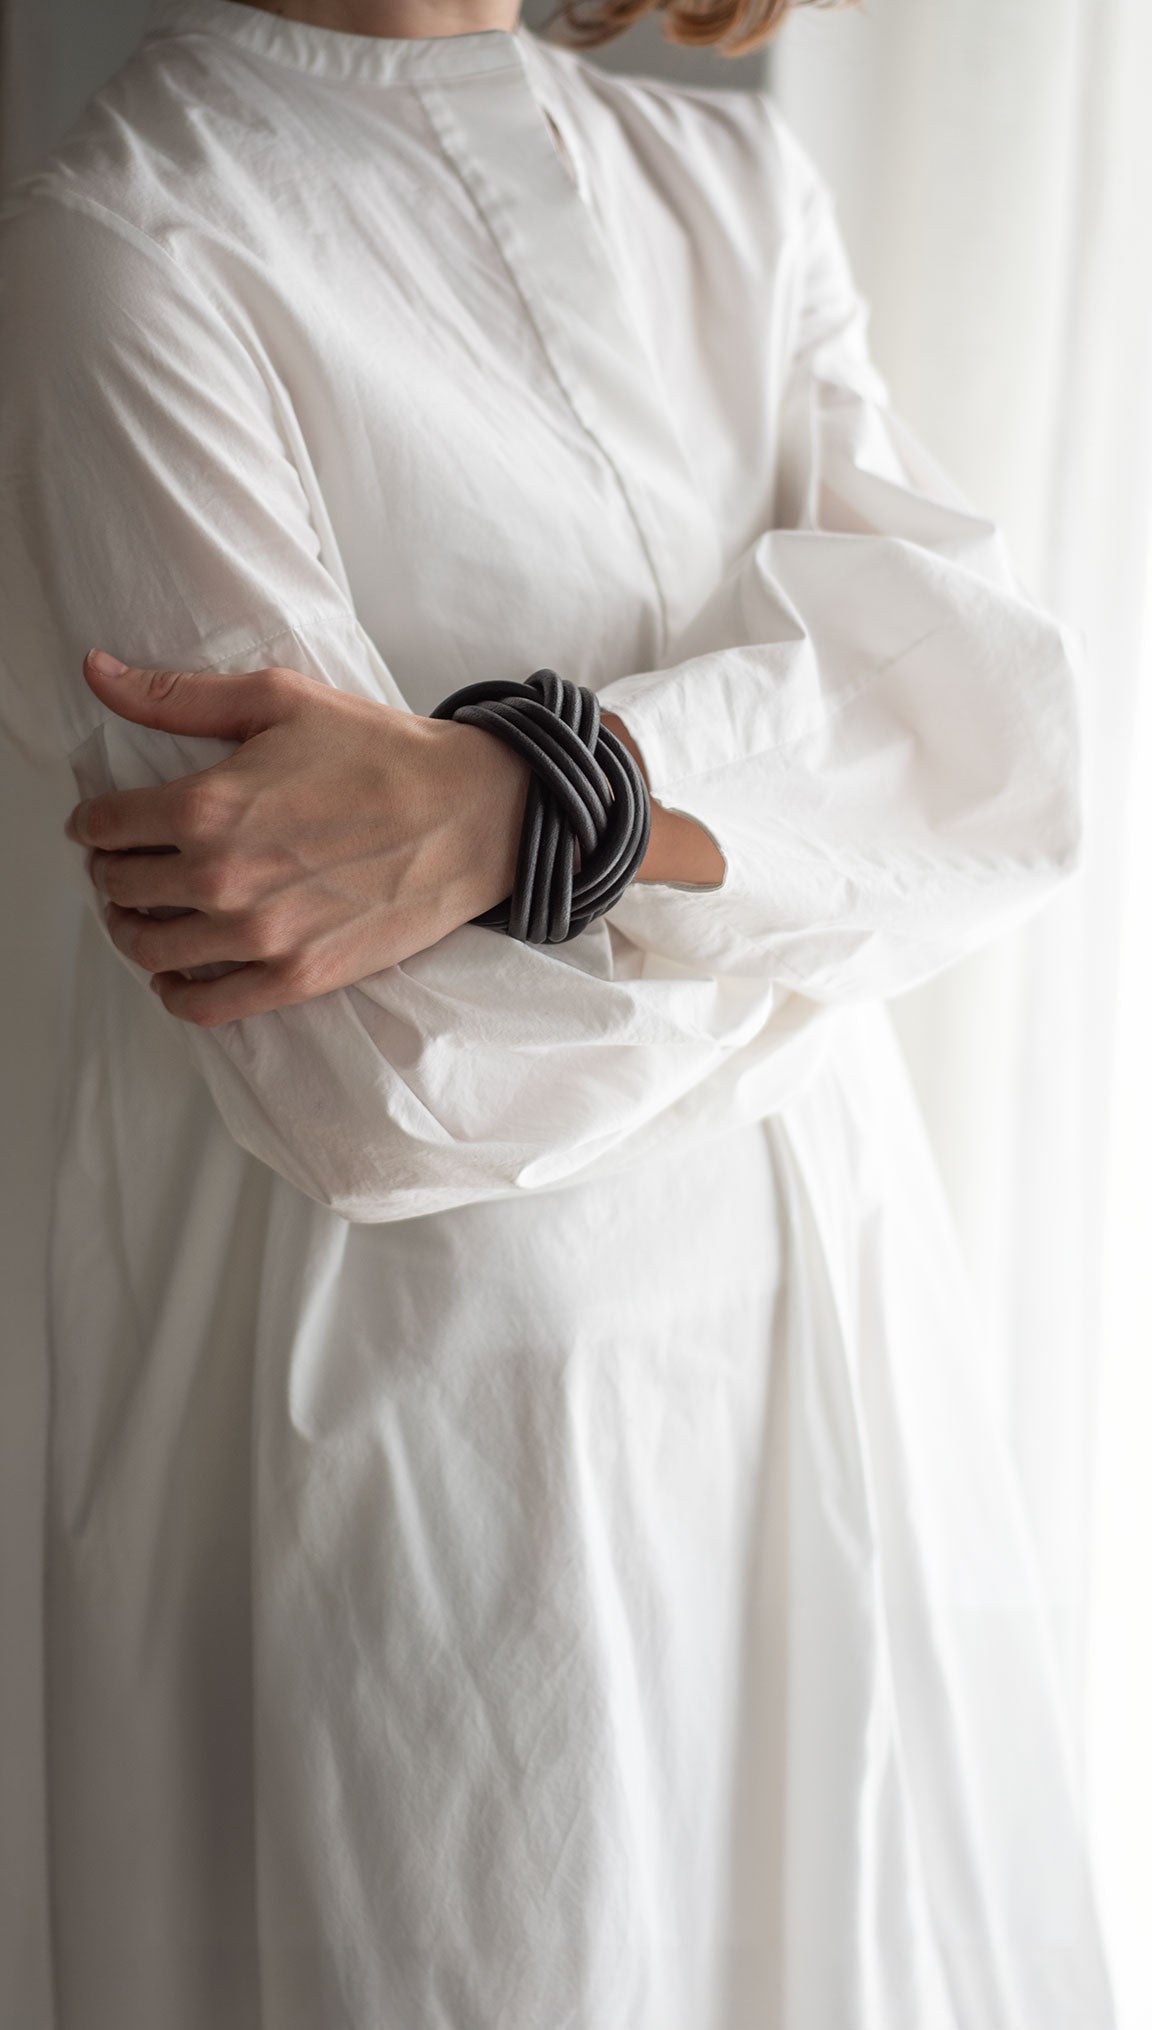 Bracciale pelle Tulsi Nodomoro con pelle nera - Gioiello in pelle - Fatto a mano in Italia - Indossato donna